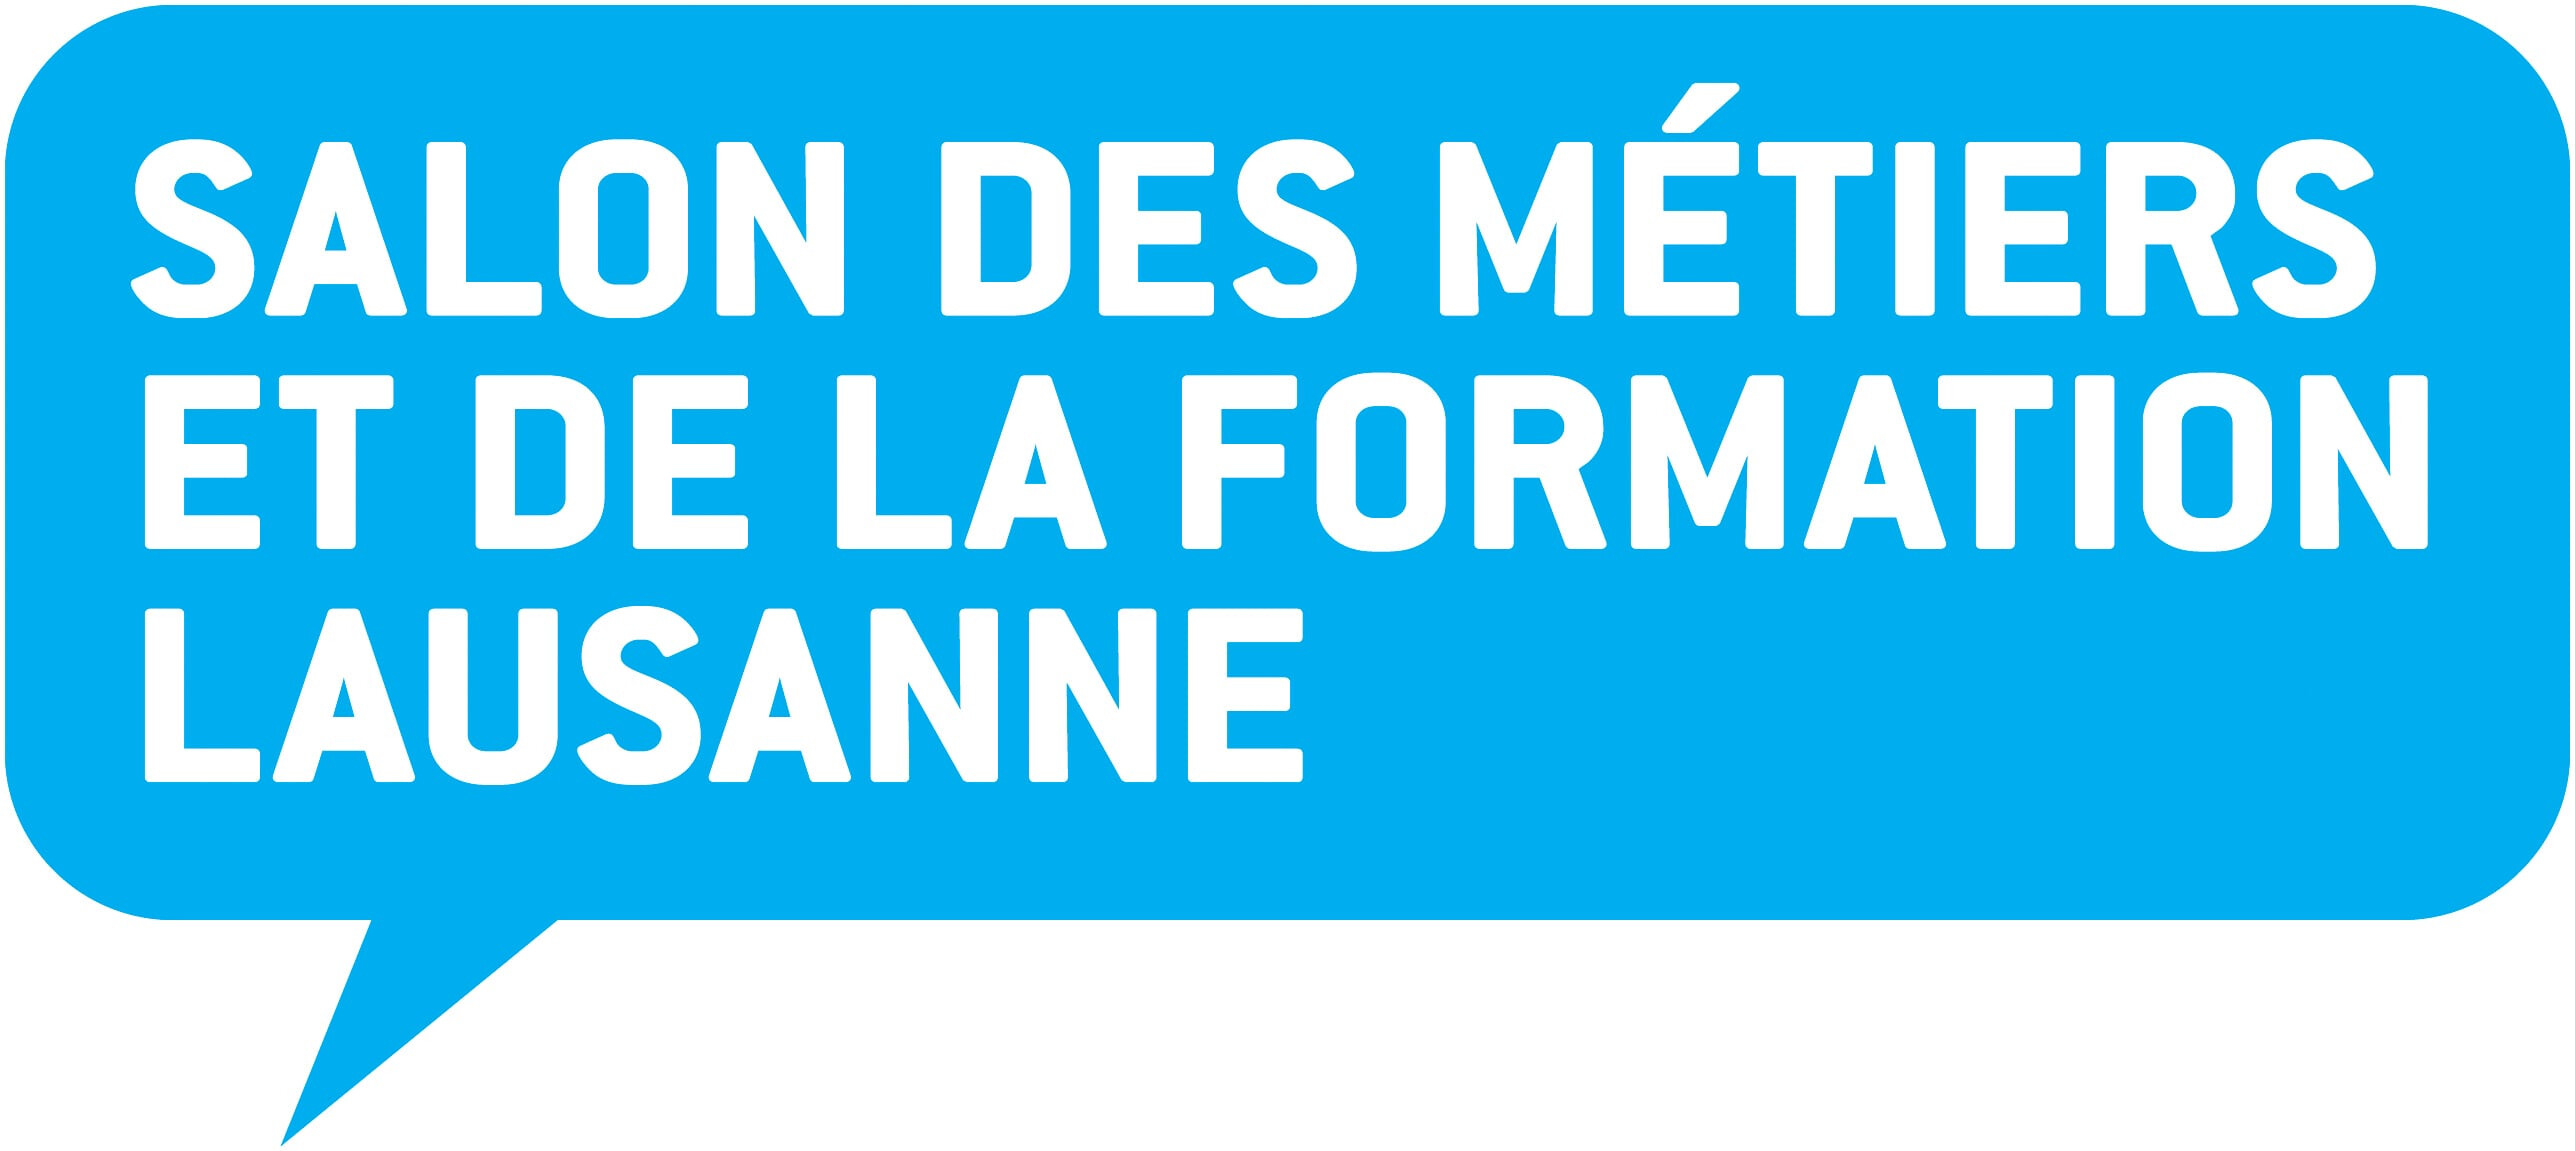 Salon des Métiers et de la Formation Lausanne cyan (.jpg)  Salon des Métiers et de la Formation Lausanne, RGB (.png)  Logo  Salon des Métiers et de la Formation Lausanne Logo